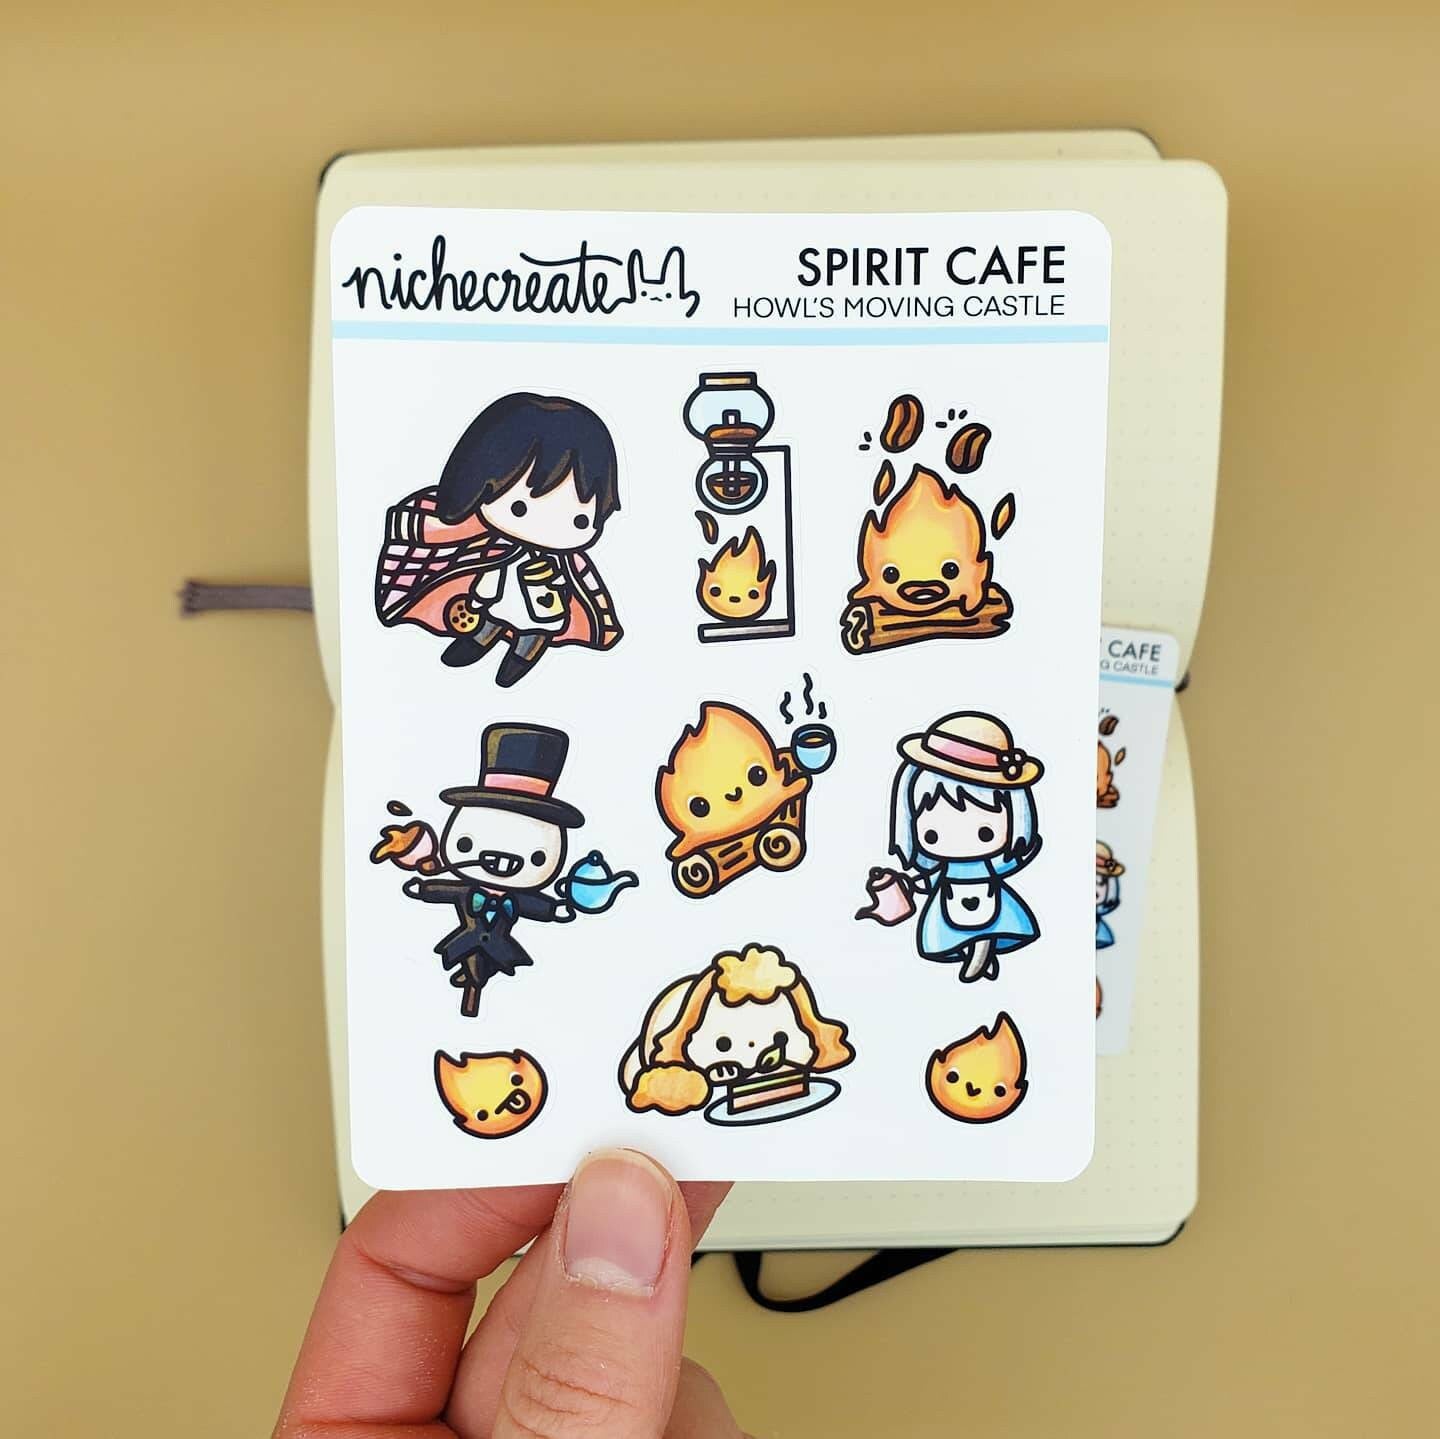 Spirit Cafe 3 Planner Sticker Sheet (Inspired Art)